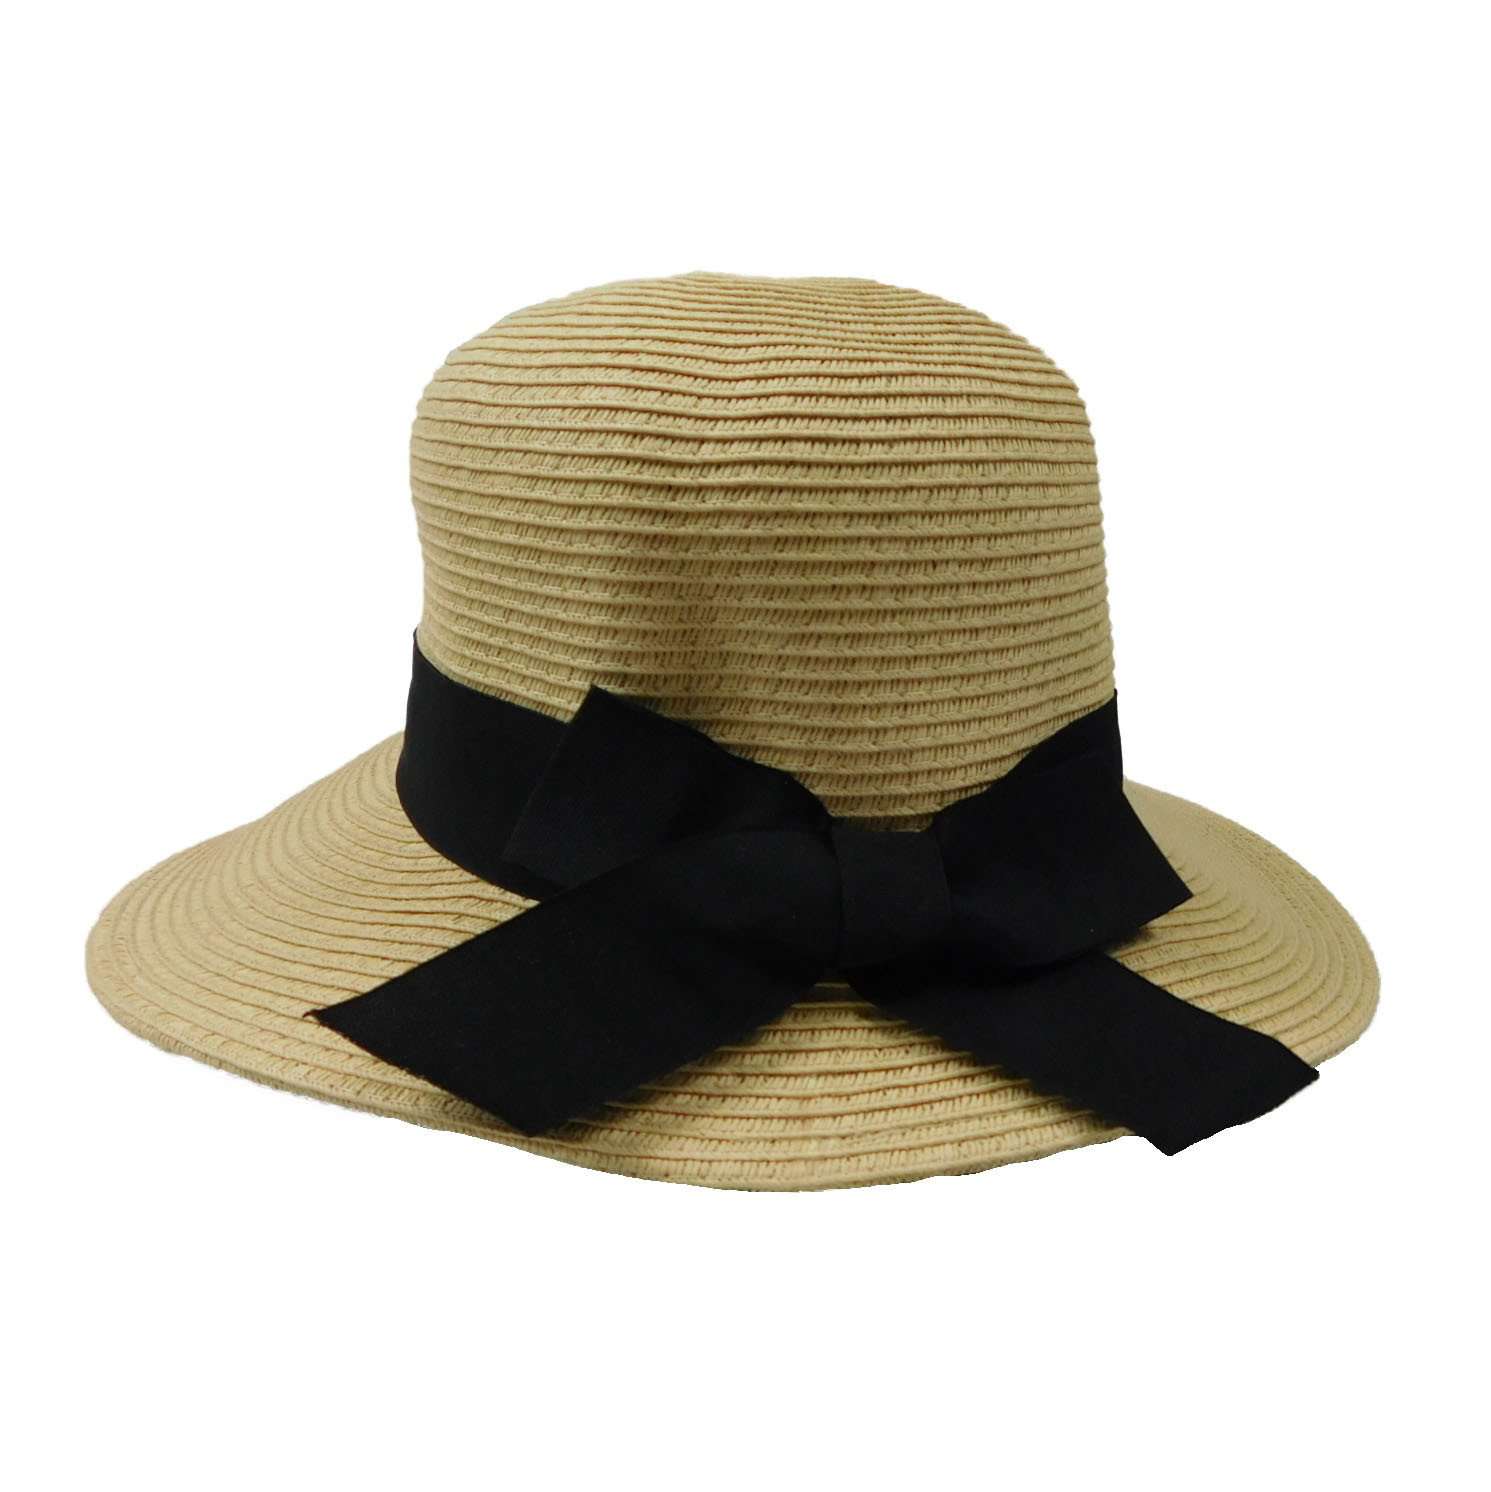 Asymmetrical Brim Summer Hat - Large and XL Size Women's Hats Wide Brim Hat Jeanne Simmons js8209TN-L Tan Large (59 cm) 